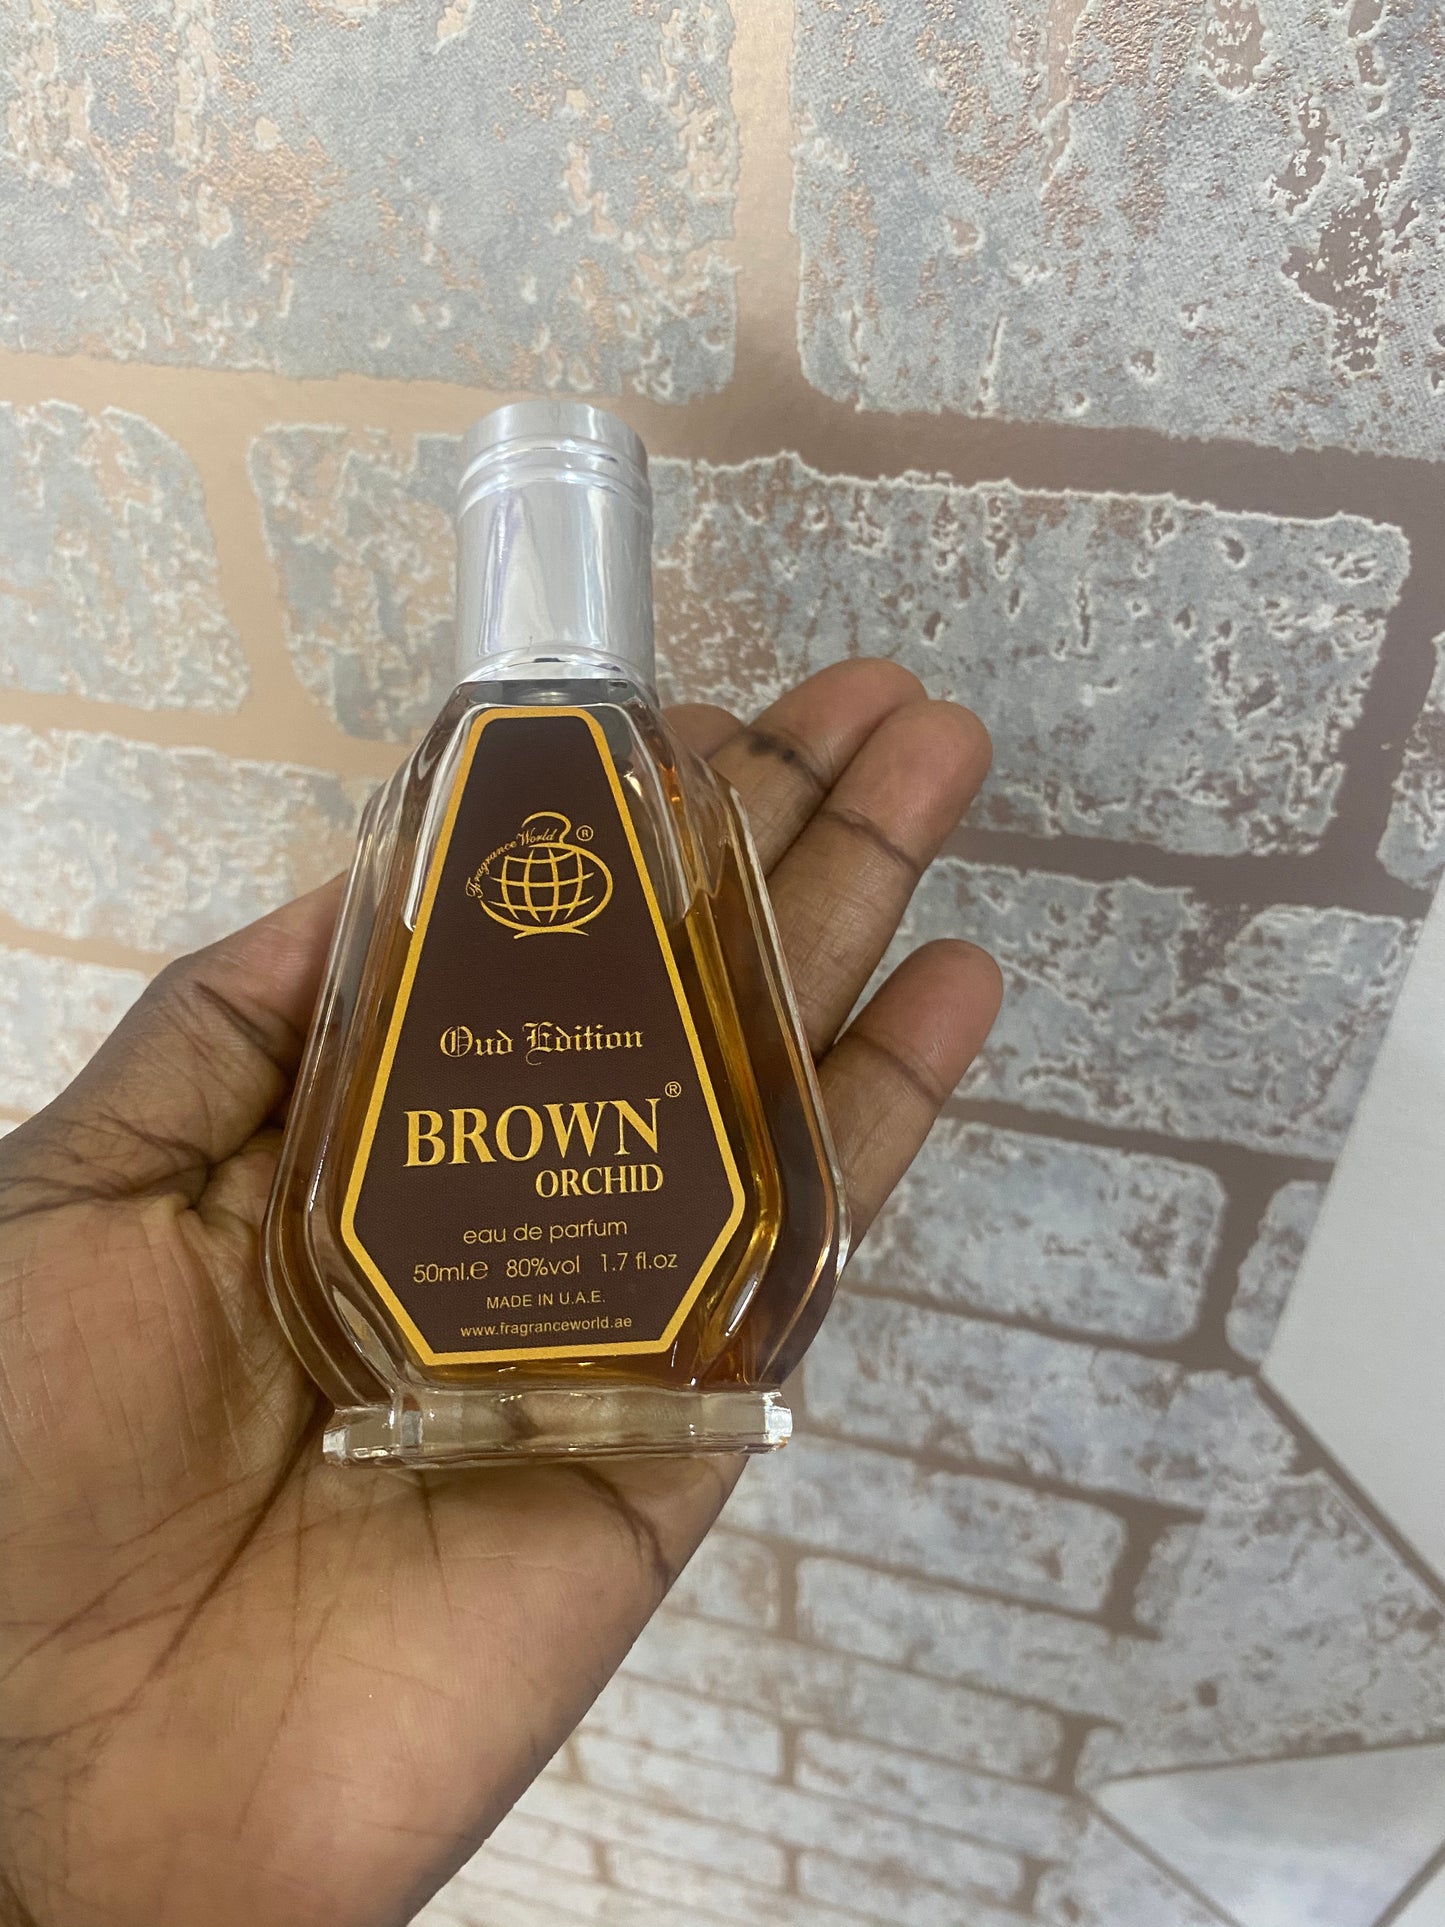 Brown orchid Oud Edition EAU de Perfume- 50ml